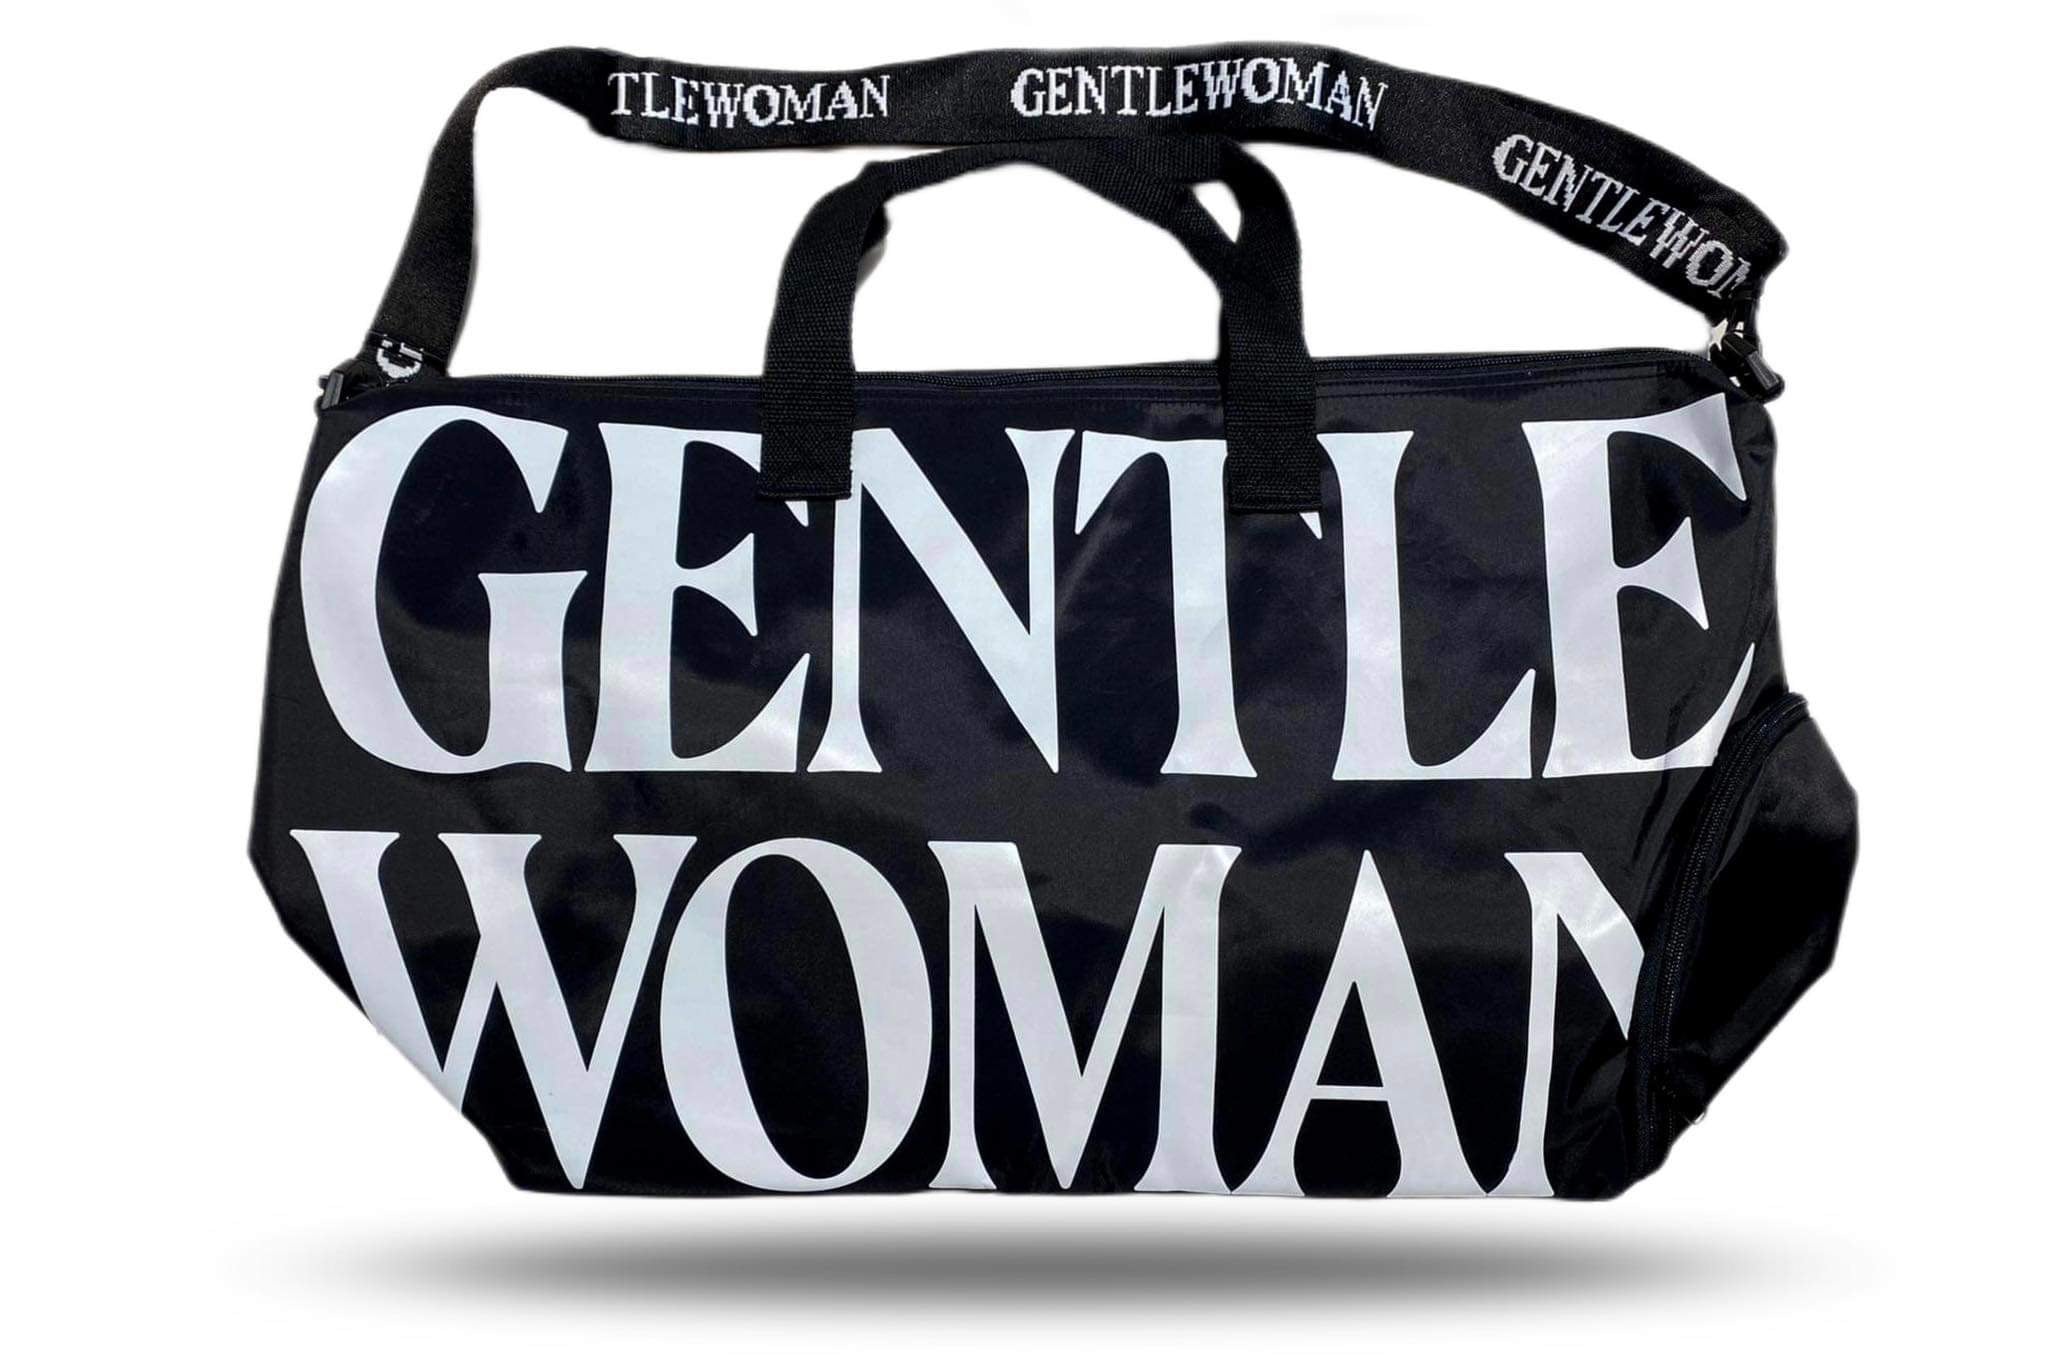 GENTLE WOMAN Caryall Duffle Weekender Bag